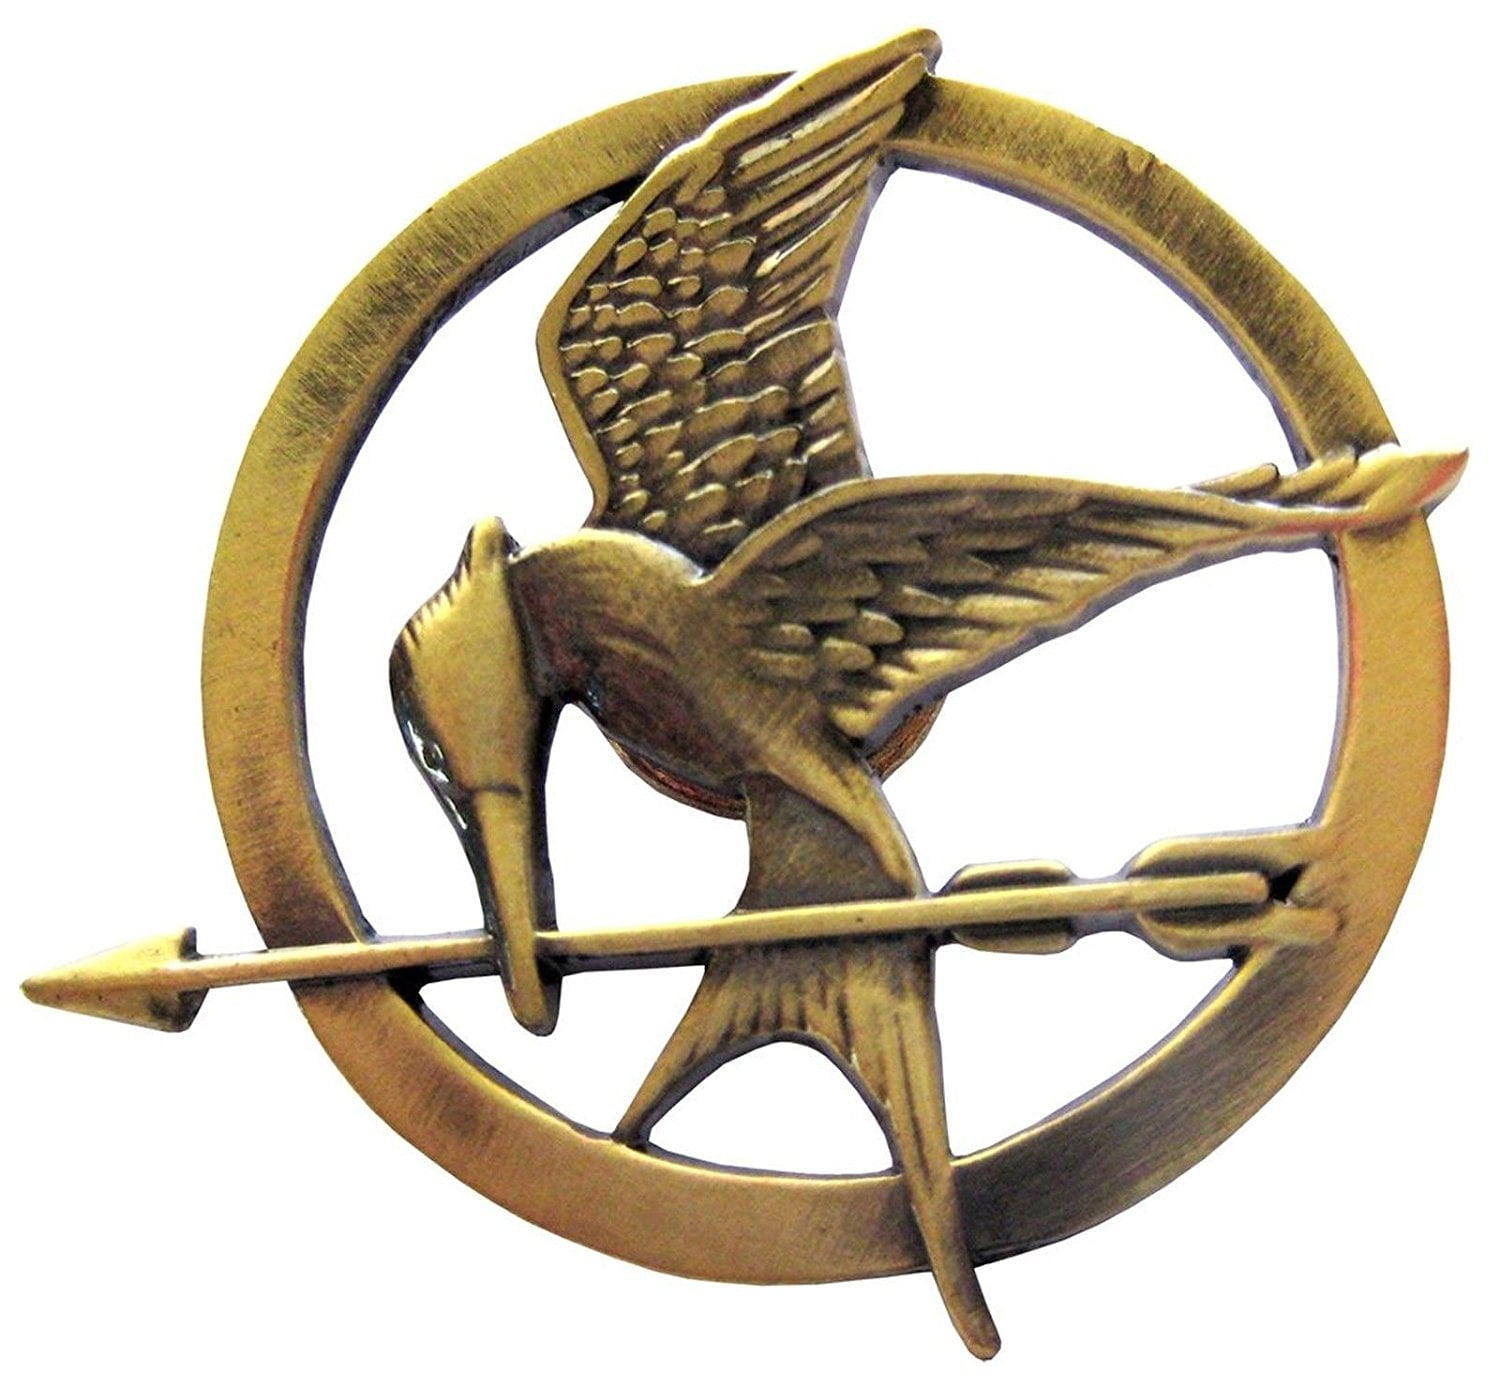 New & Rare Lot of 2 Hunger Games Mockingjay Pin 